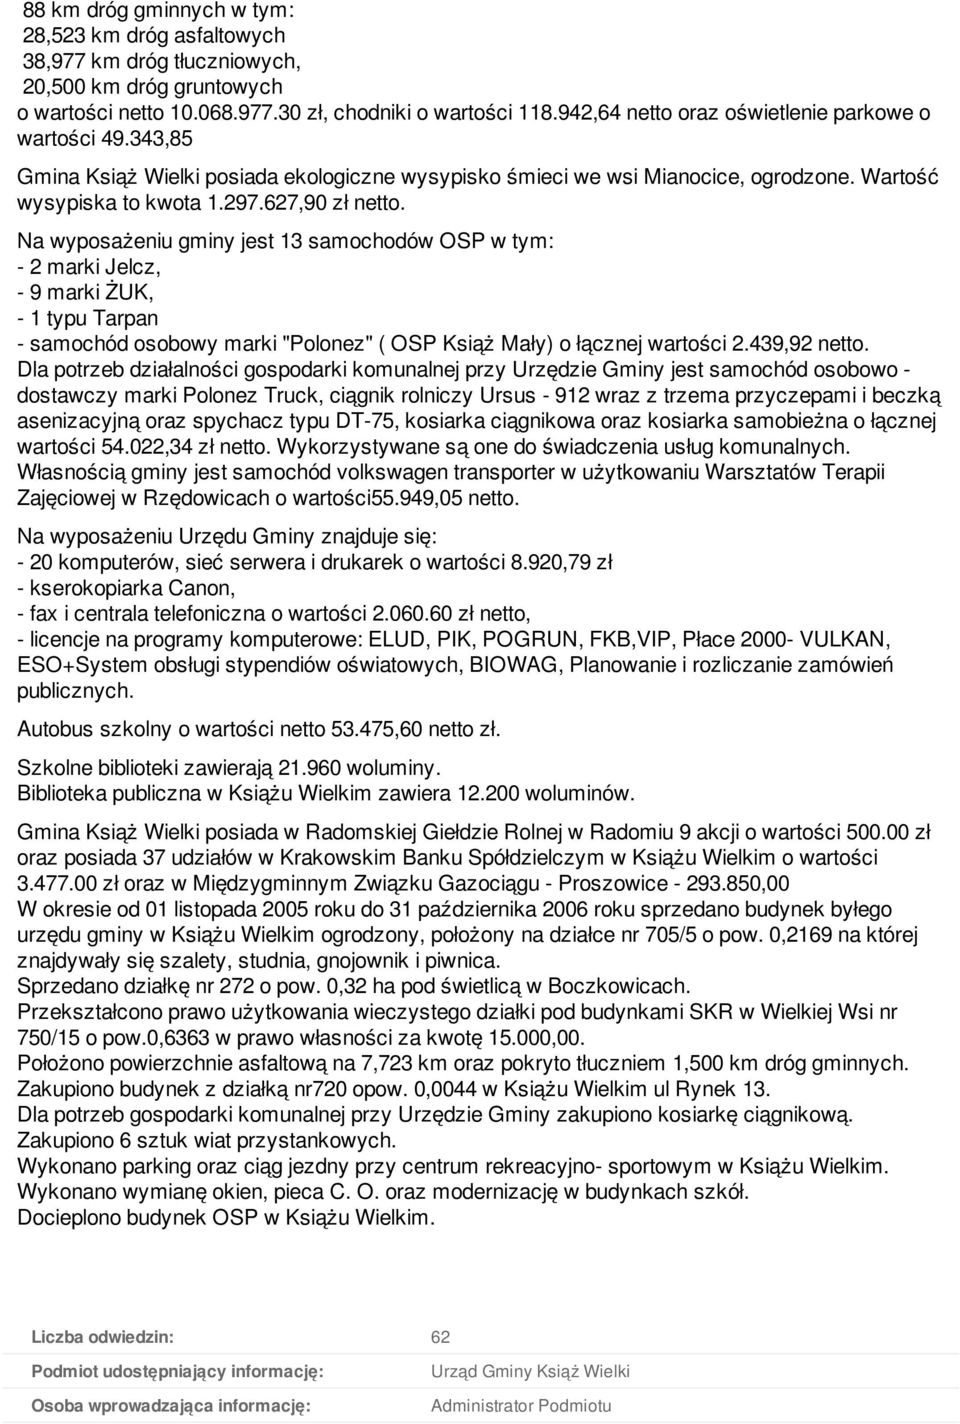 Na wyposażeniu gminy jest 13 samochodów OSP w tym: - 2 marki Jelcz, - 9 marki ŻUK, - 1 typu Tarpan - samochód osobowy marki "Polonez" ( OSP Książ Mały) o łącznej wartości 2.439,92 netto.